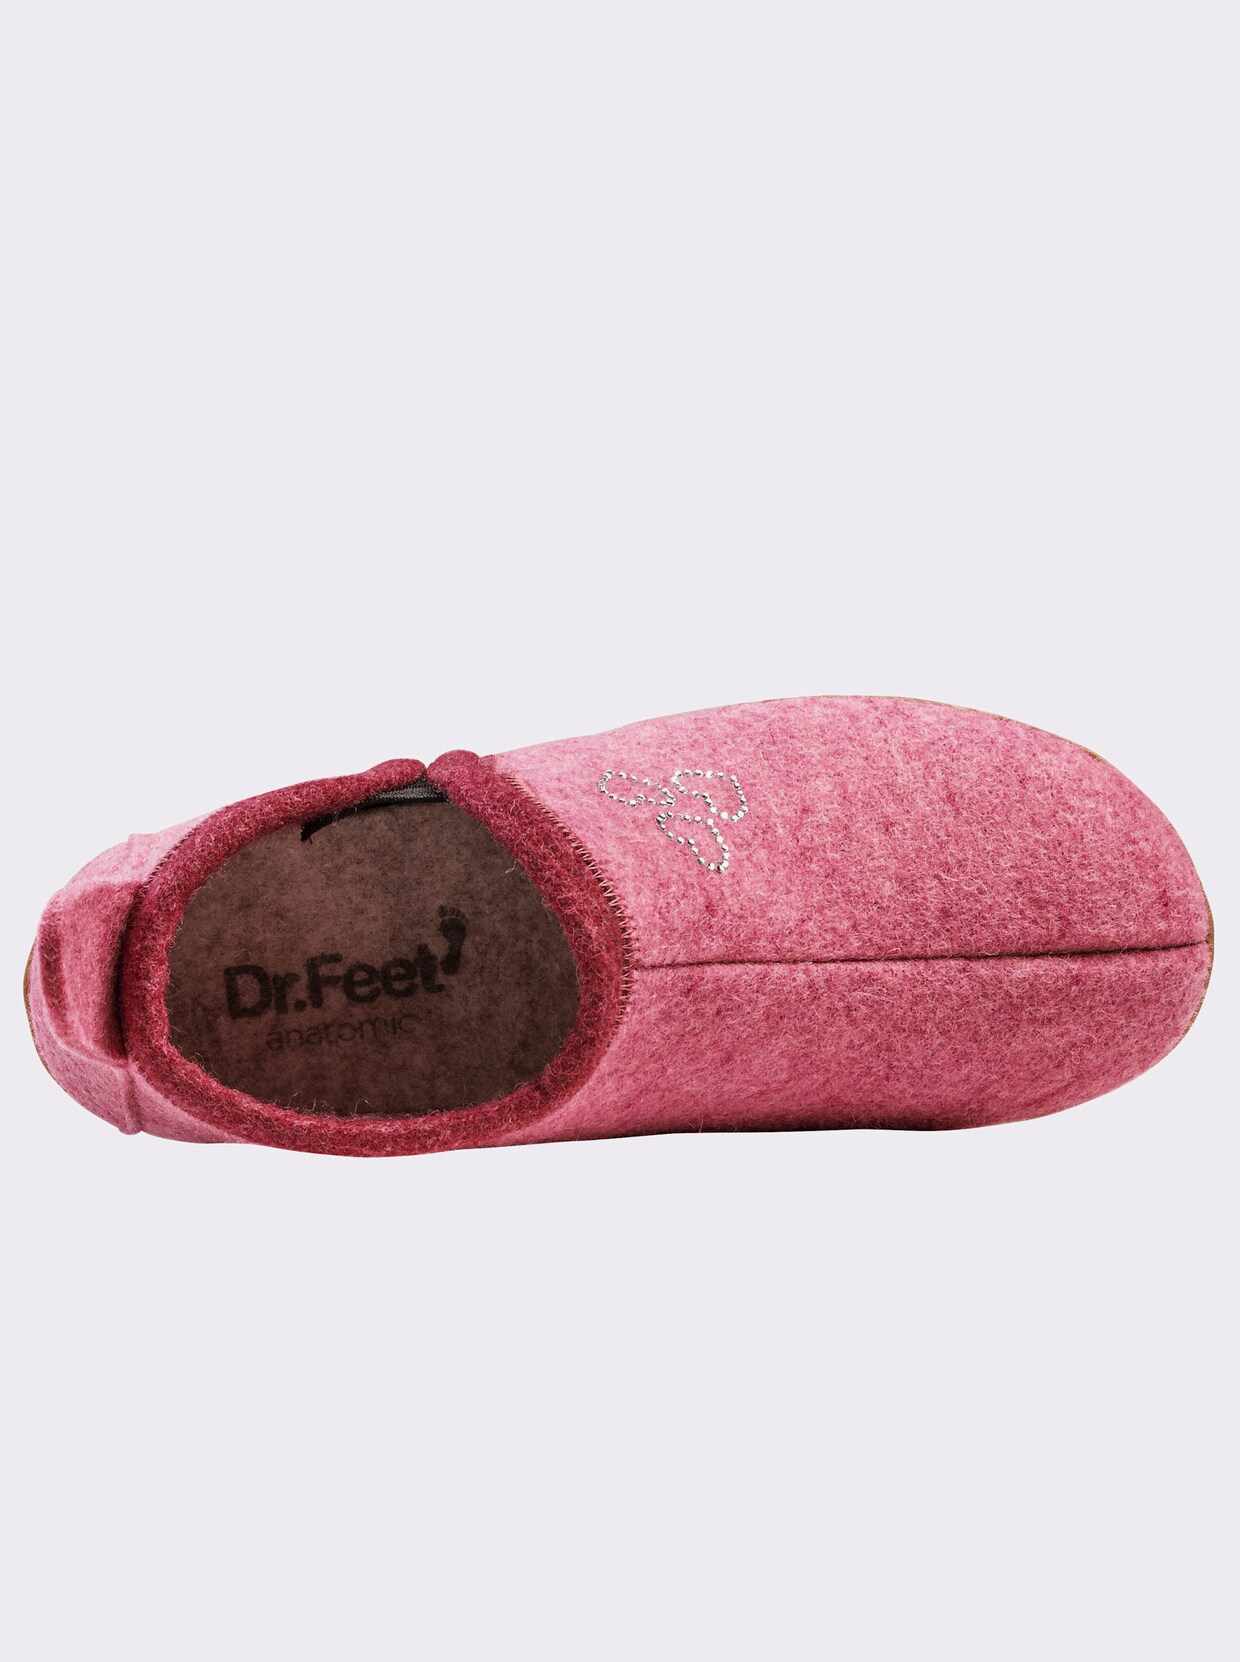 Dr. Feet Hausschuhe - rosa